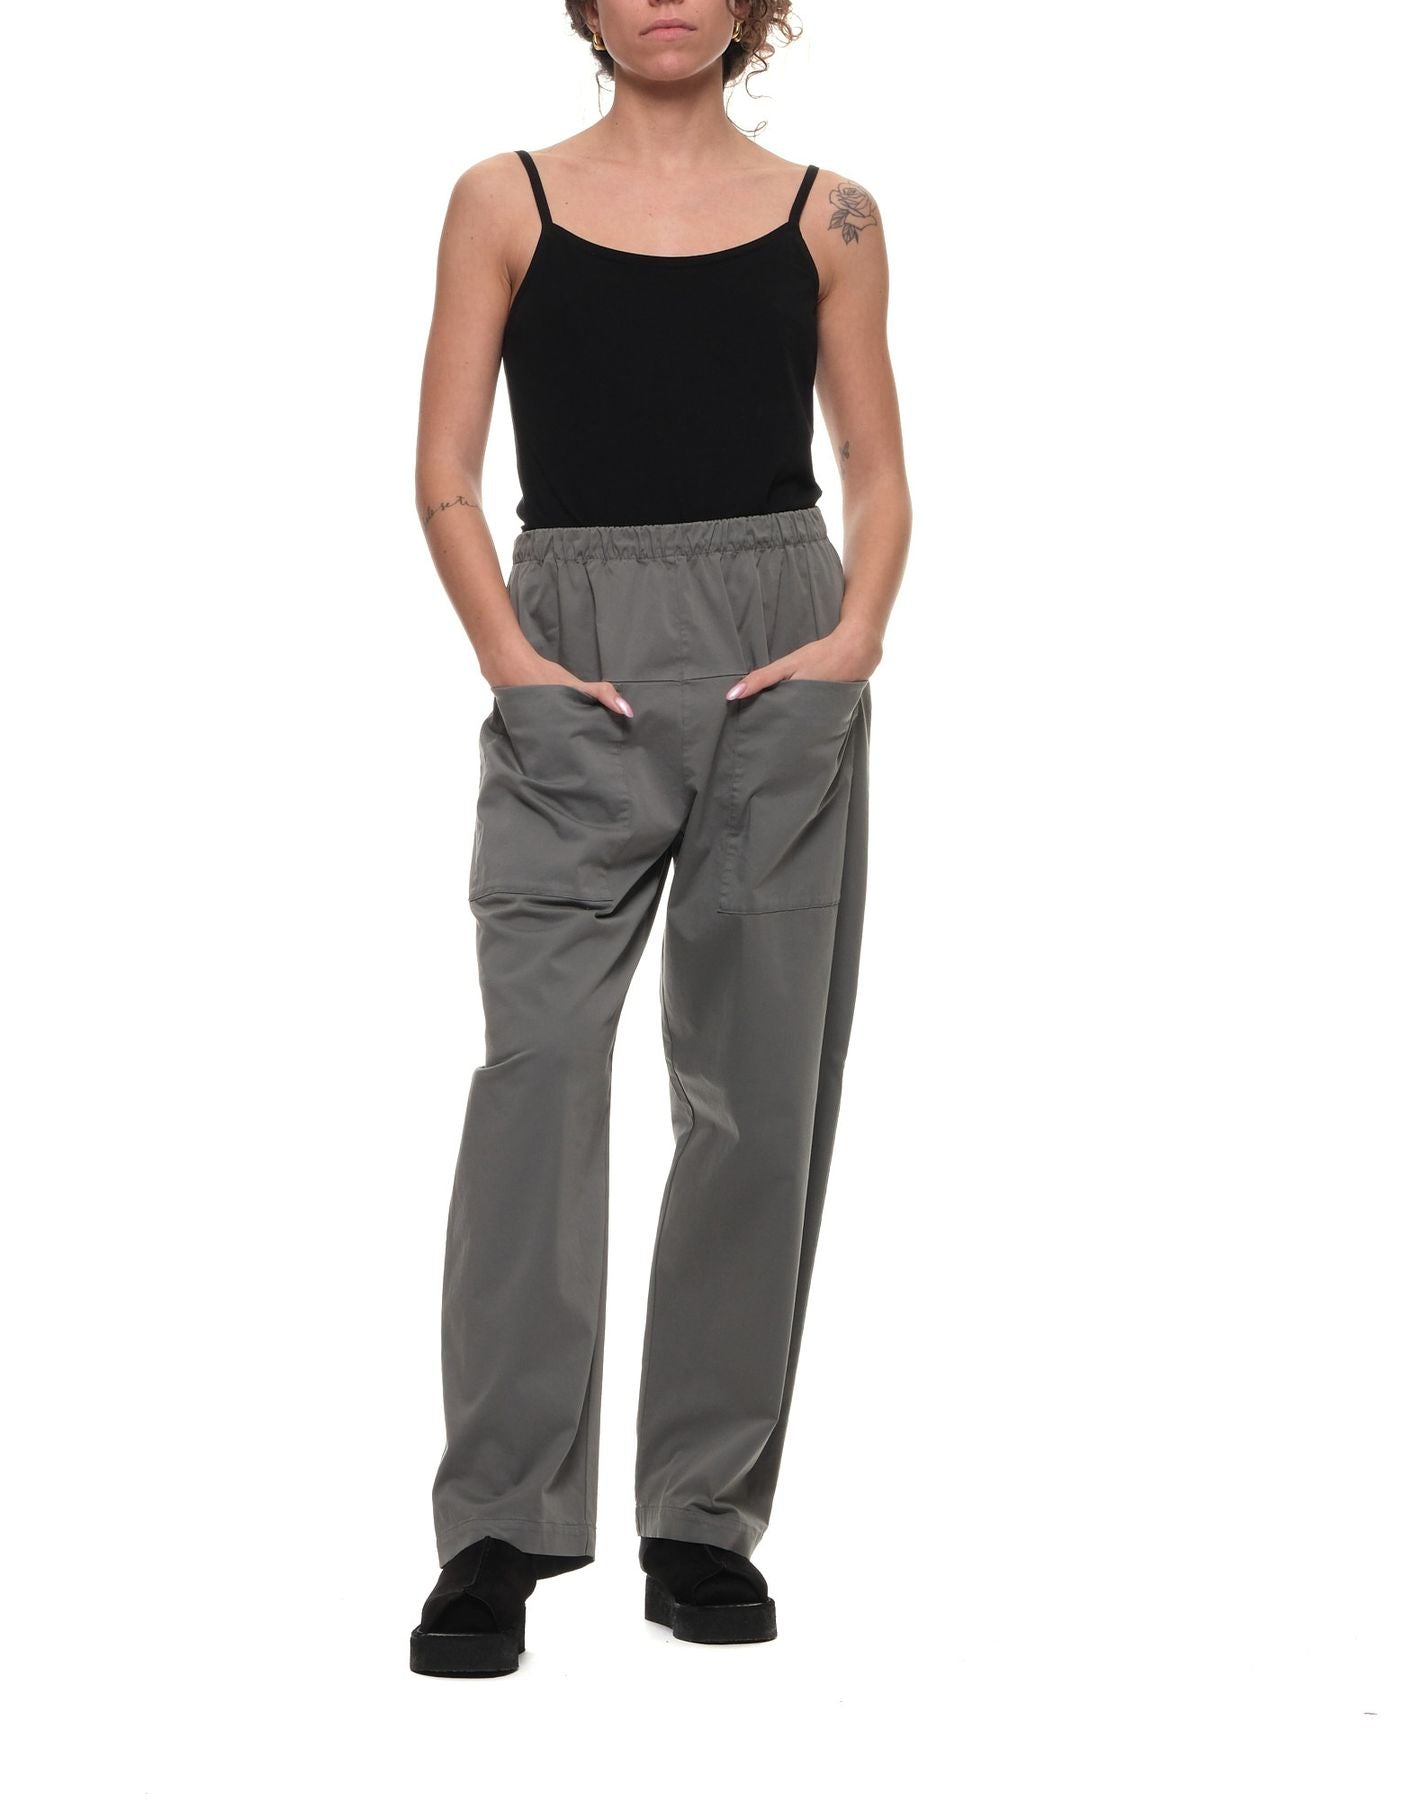 Pantalon pour femme cfdtrwo242 12 gris TRANSIT